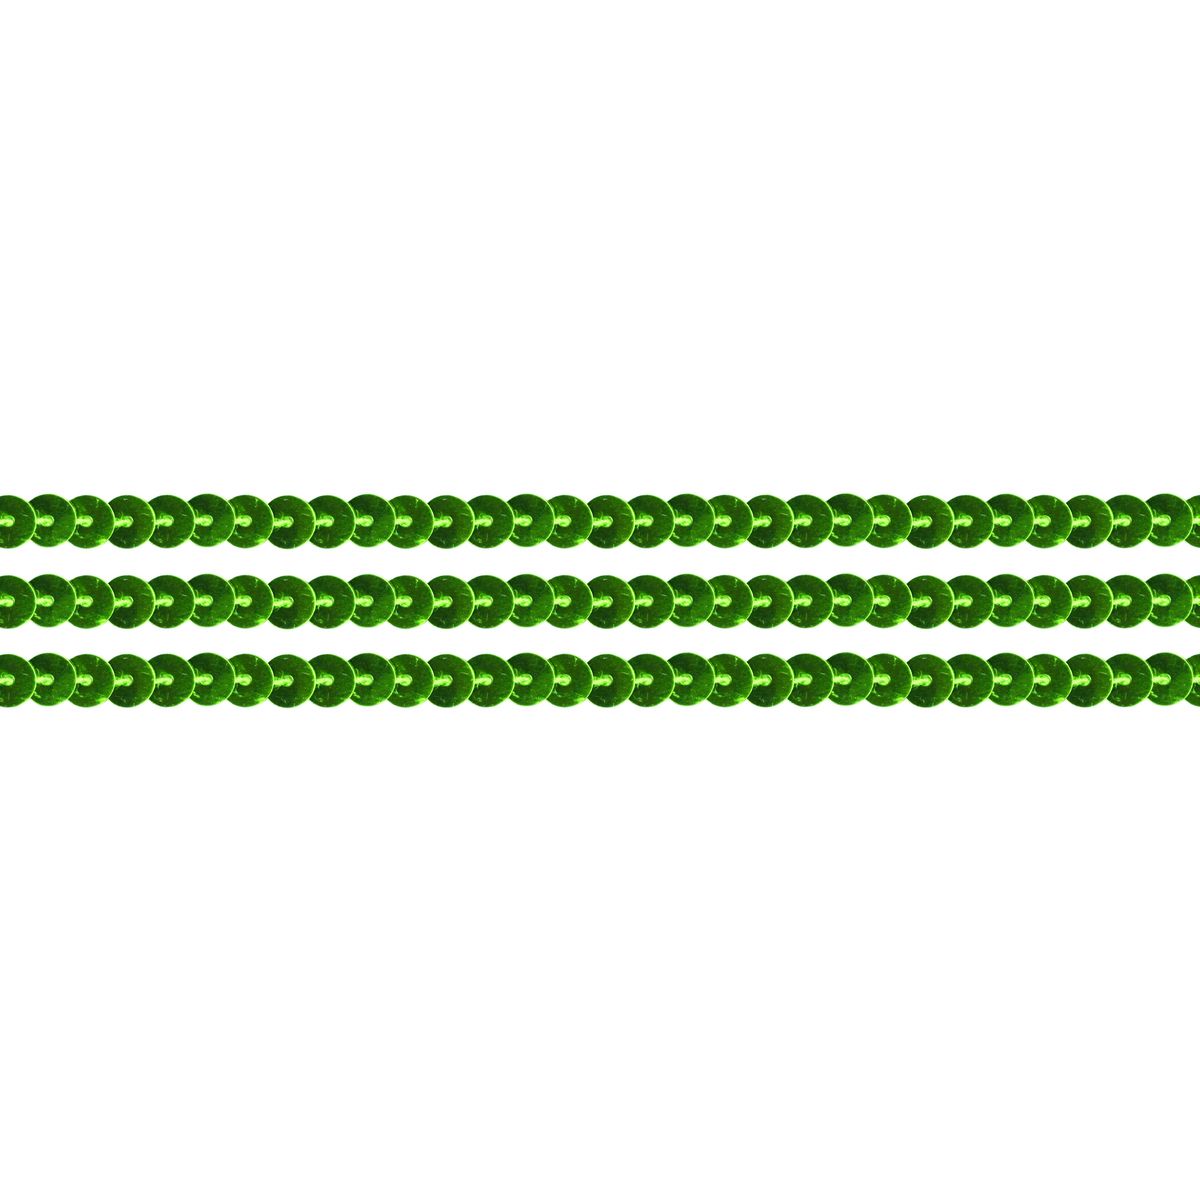 Taśma ozdobna Titanum Craft-Fun Series z cekinami 6mm zielona 2m (363640)